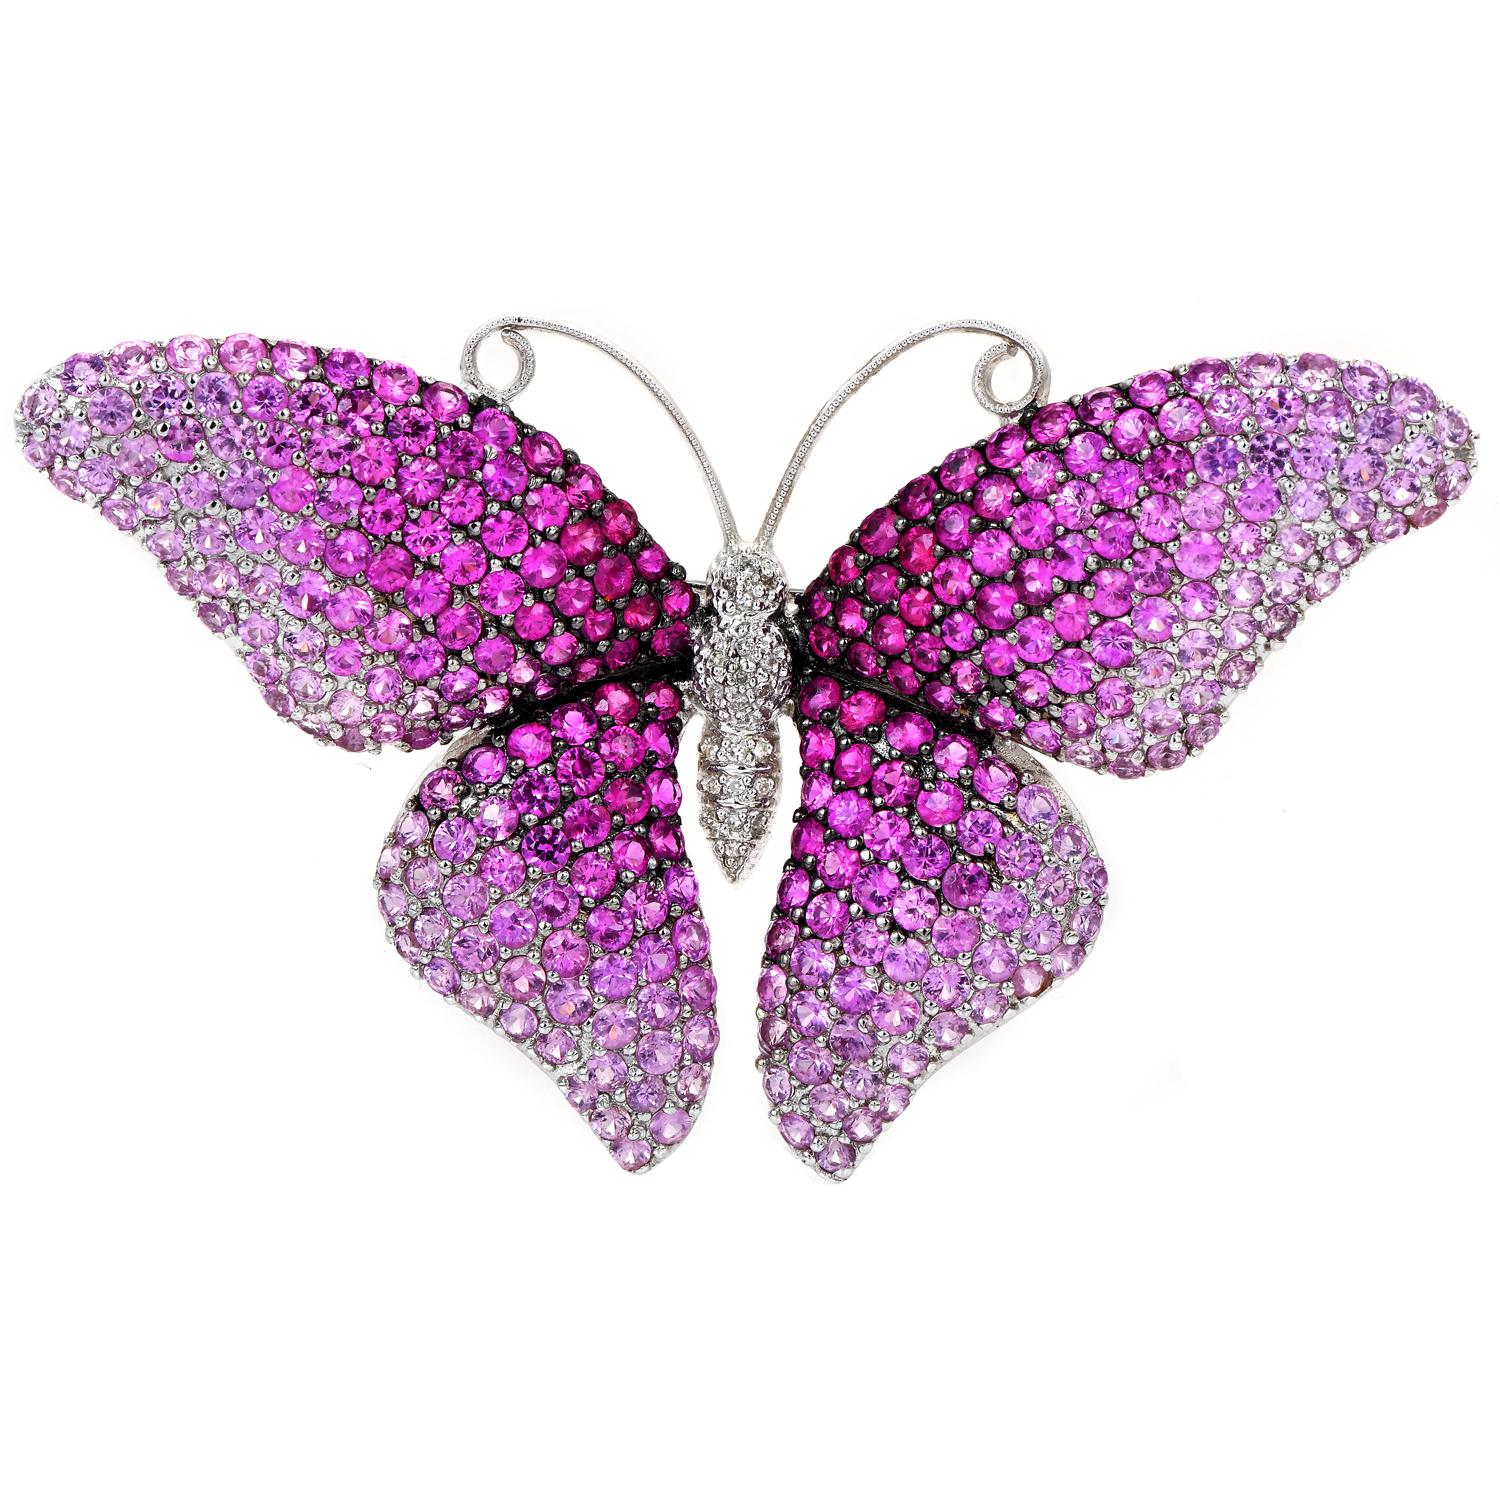 Diese exquisite Estate Pink Sapphire Schmetterlingsnadel mit Anhänger ist aus massivem 18 Karat Weißgold gefertigt. Der Körper ist mit echten rosa Saphiren im Rundschliff in verschiedenen Farbtönen besetzt. Diese süße Brosche und der Anhänger sind